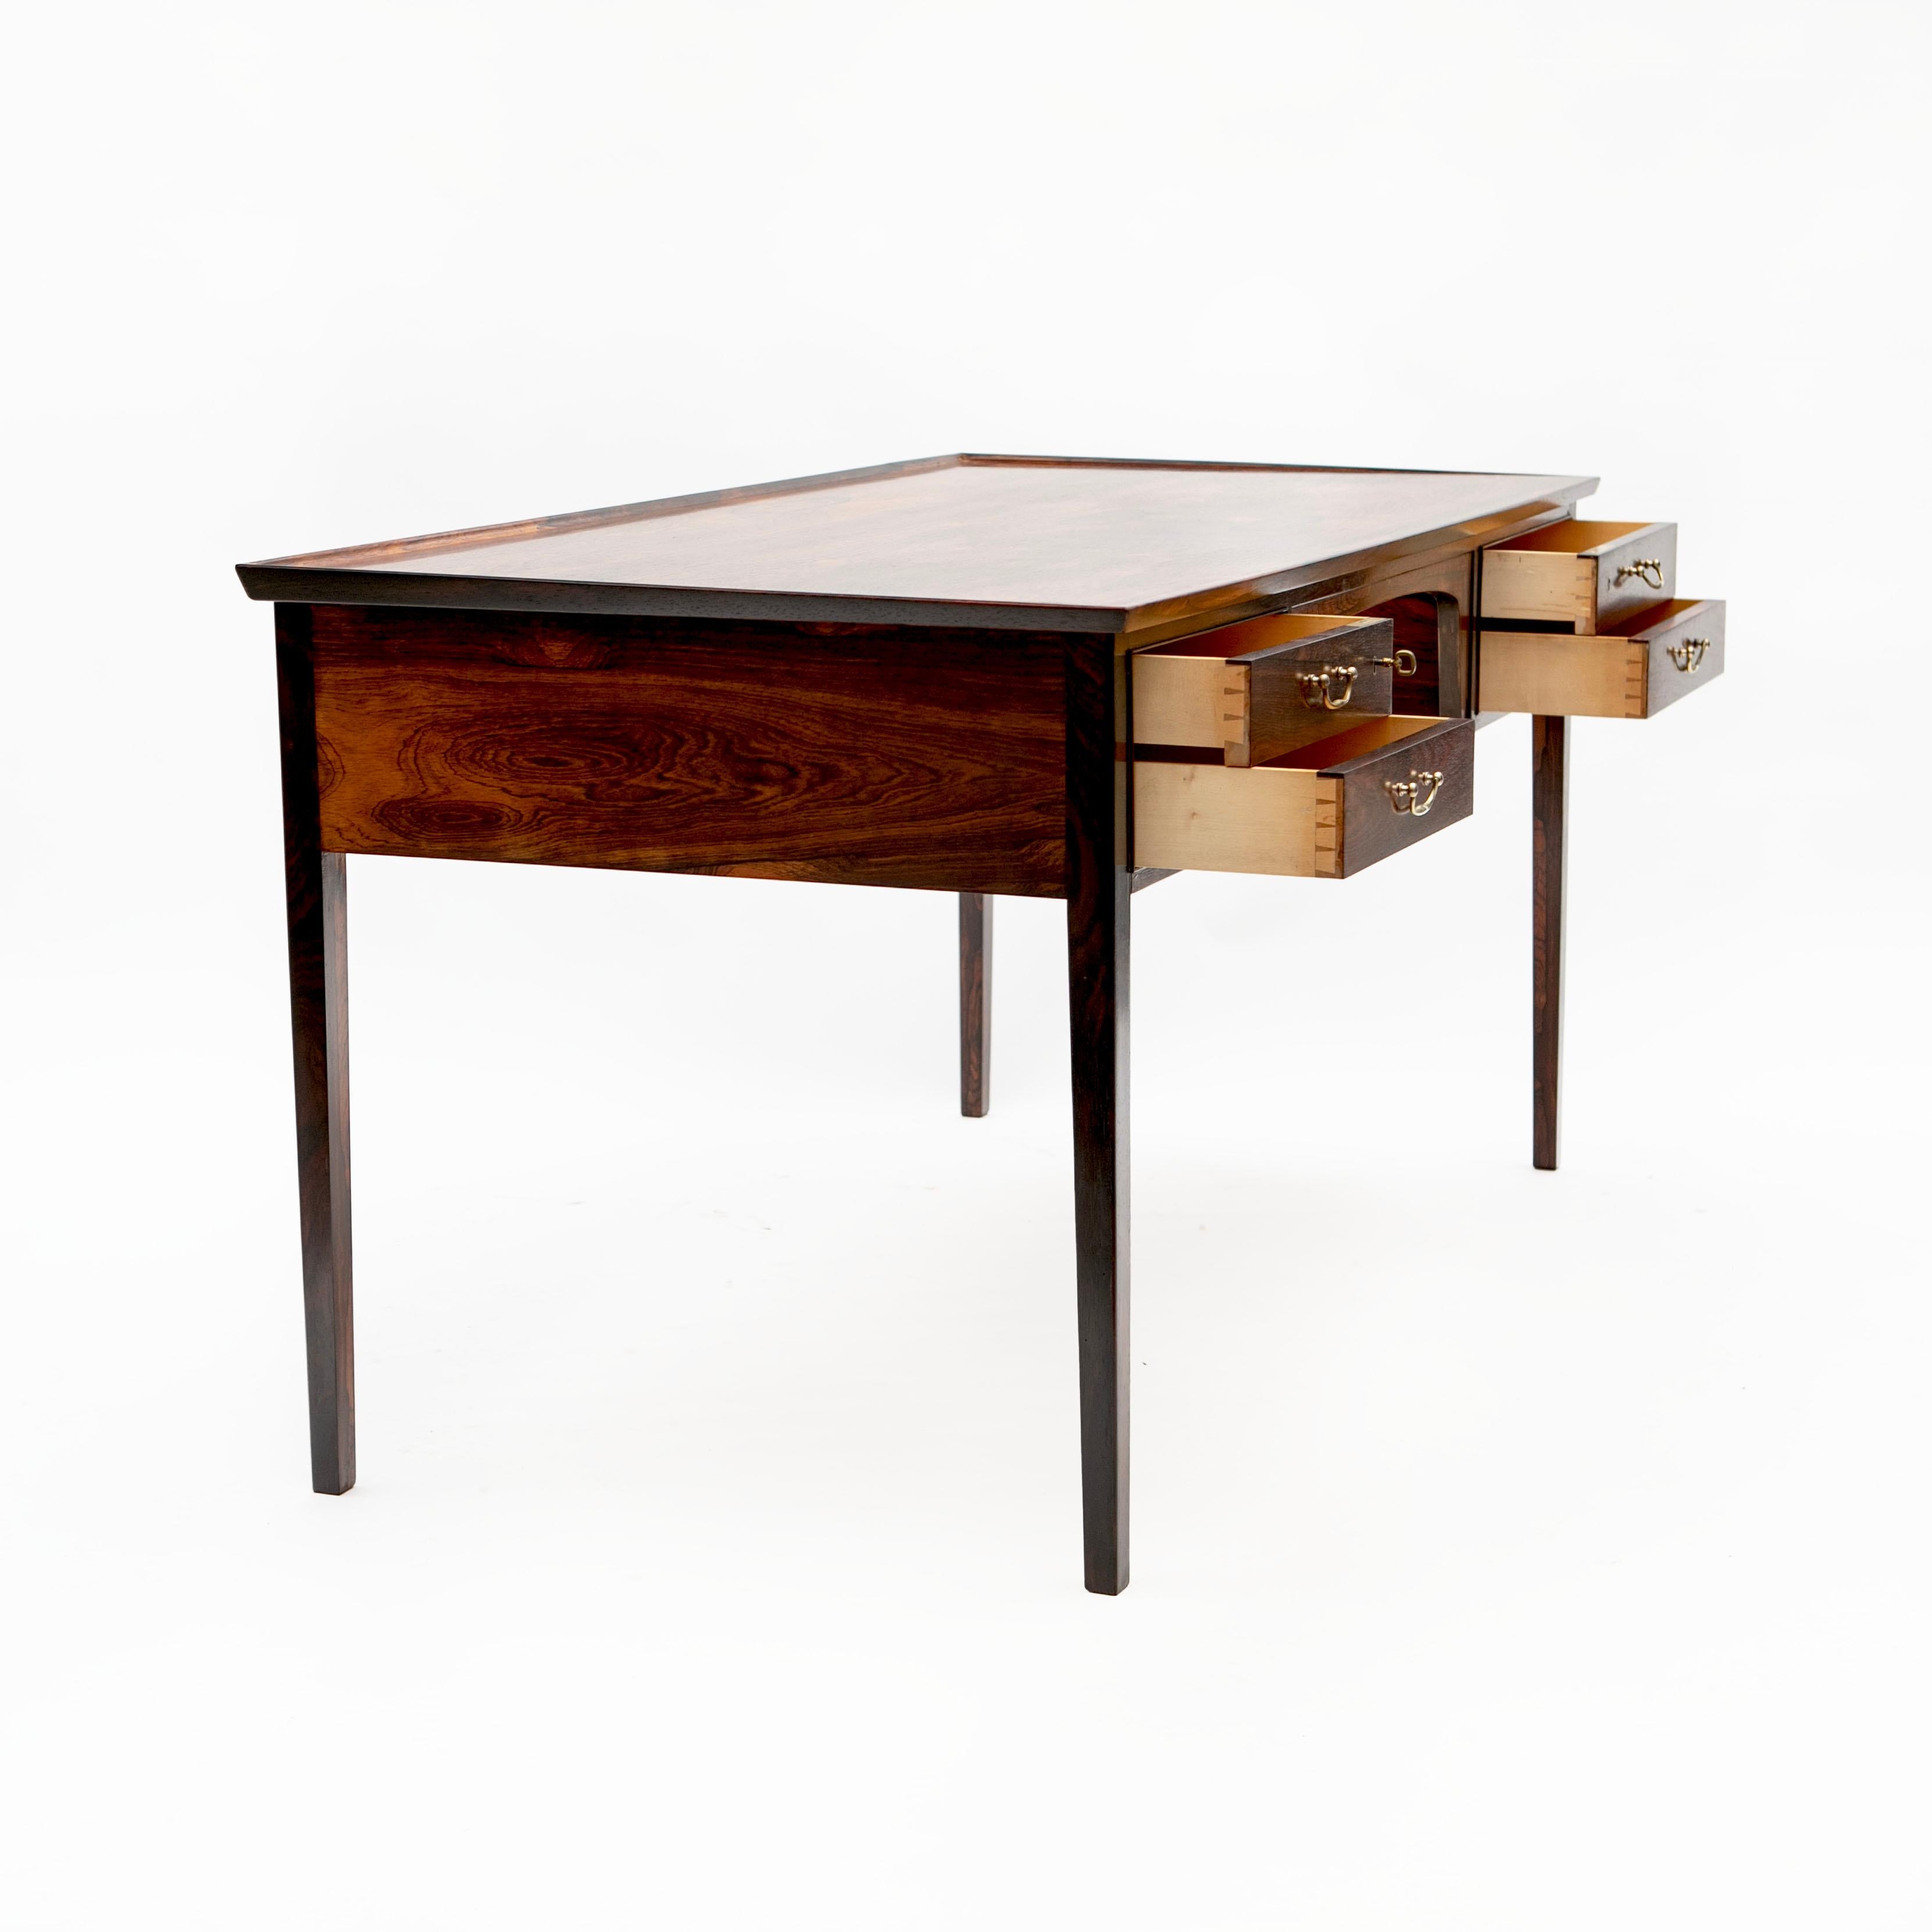 Freistehender Schreibtisch aus Rio-Palisanderholz mit schöner Maserung, entworfen von Jacob Kjær, Dänemark 1950-1960.
Front mit 2x2 Schubladen mit Messinggriffen. Oberteil mit erhöhtem Rand.
Der Schreibtisch zeichnet sich durch seine hochwertige